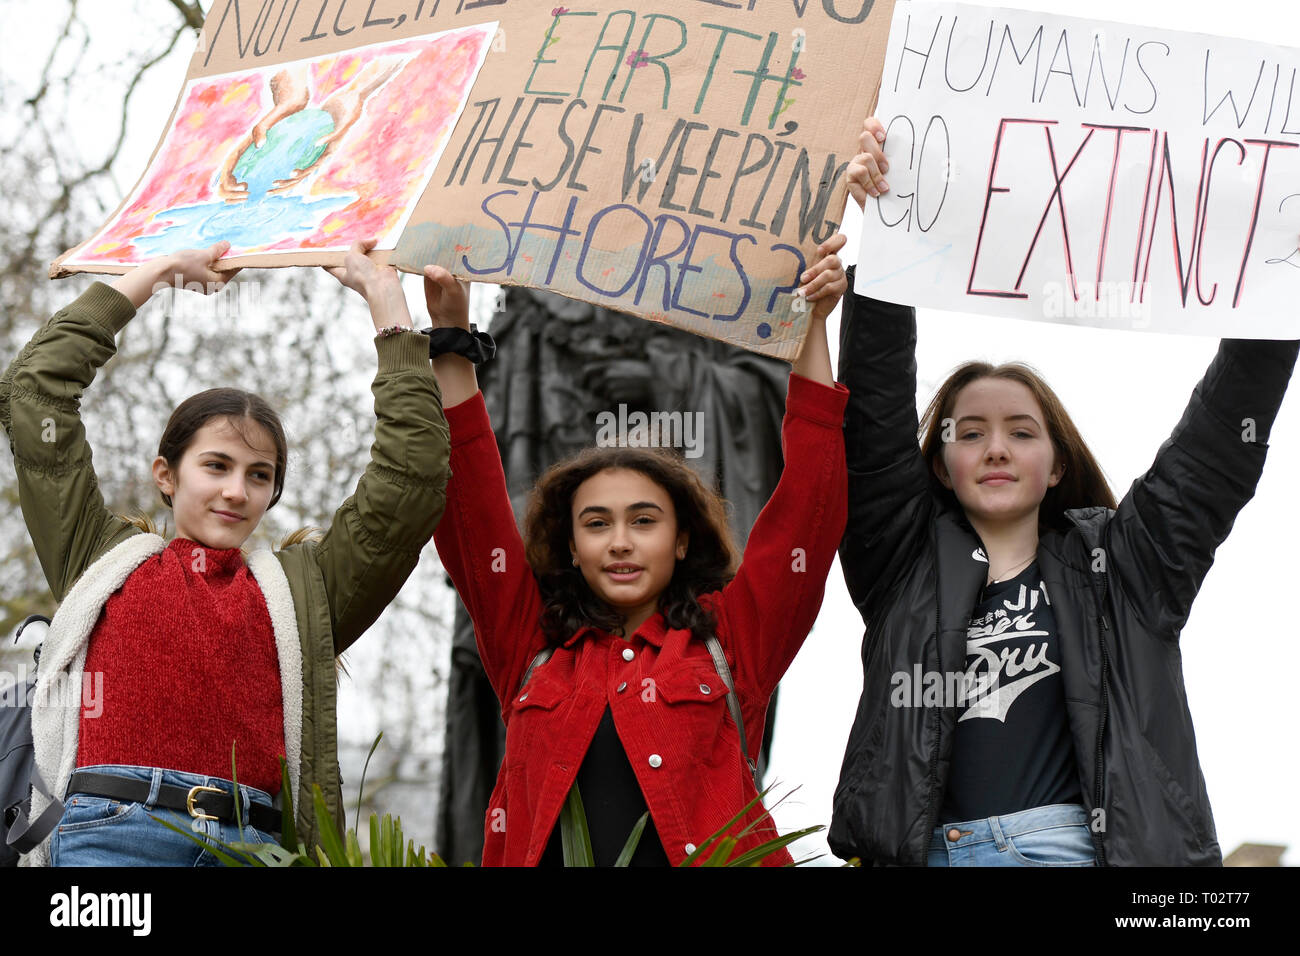 Studenten werden gesehen, Plakate während des Protestes. Hunderte von jungen Menschen im Parlament Platz versammelt, das globale Klima Streik und fordern von der Regierung und der Politiker direkte Aktionen, die zur Bekämpfung des Klimawandels. Studenten in mehr als 100 Ländern waren in den Straßen in einem Klima globale Streik zu beteiligen. Stockfoto